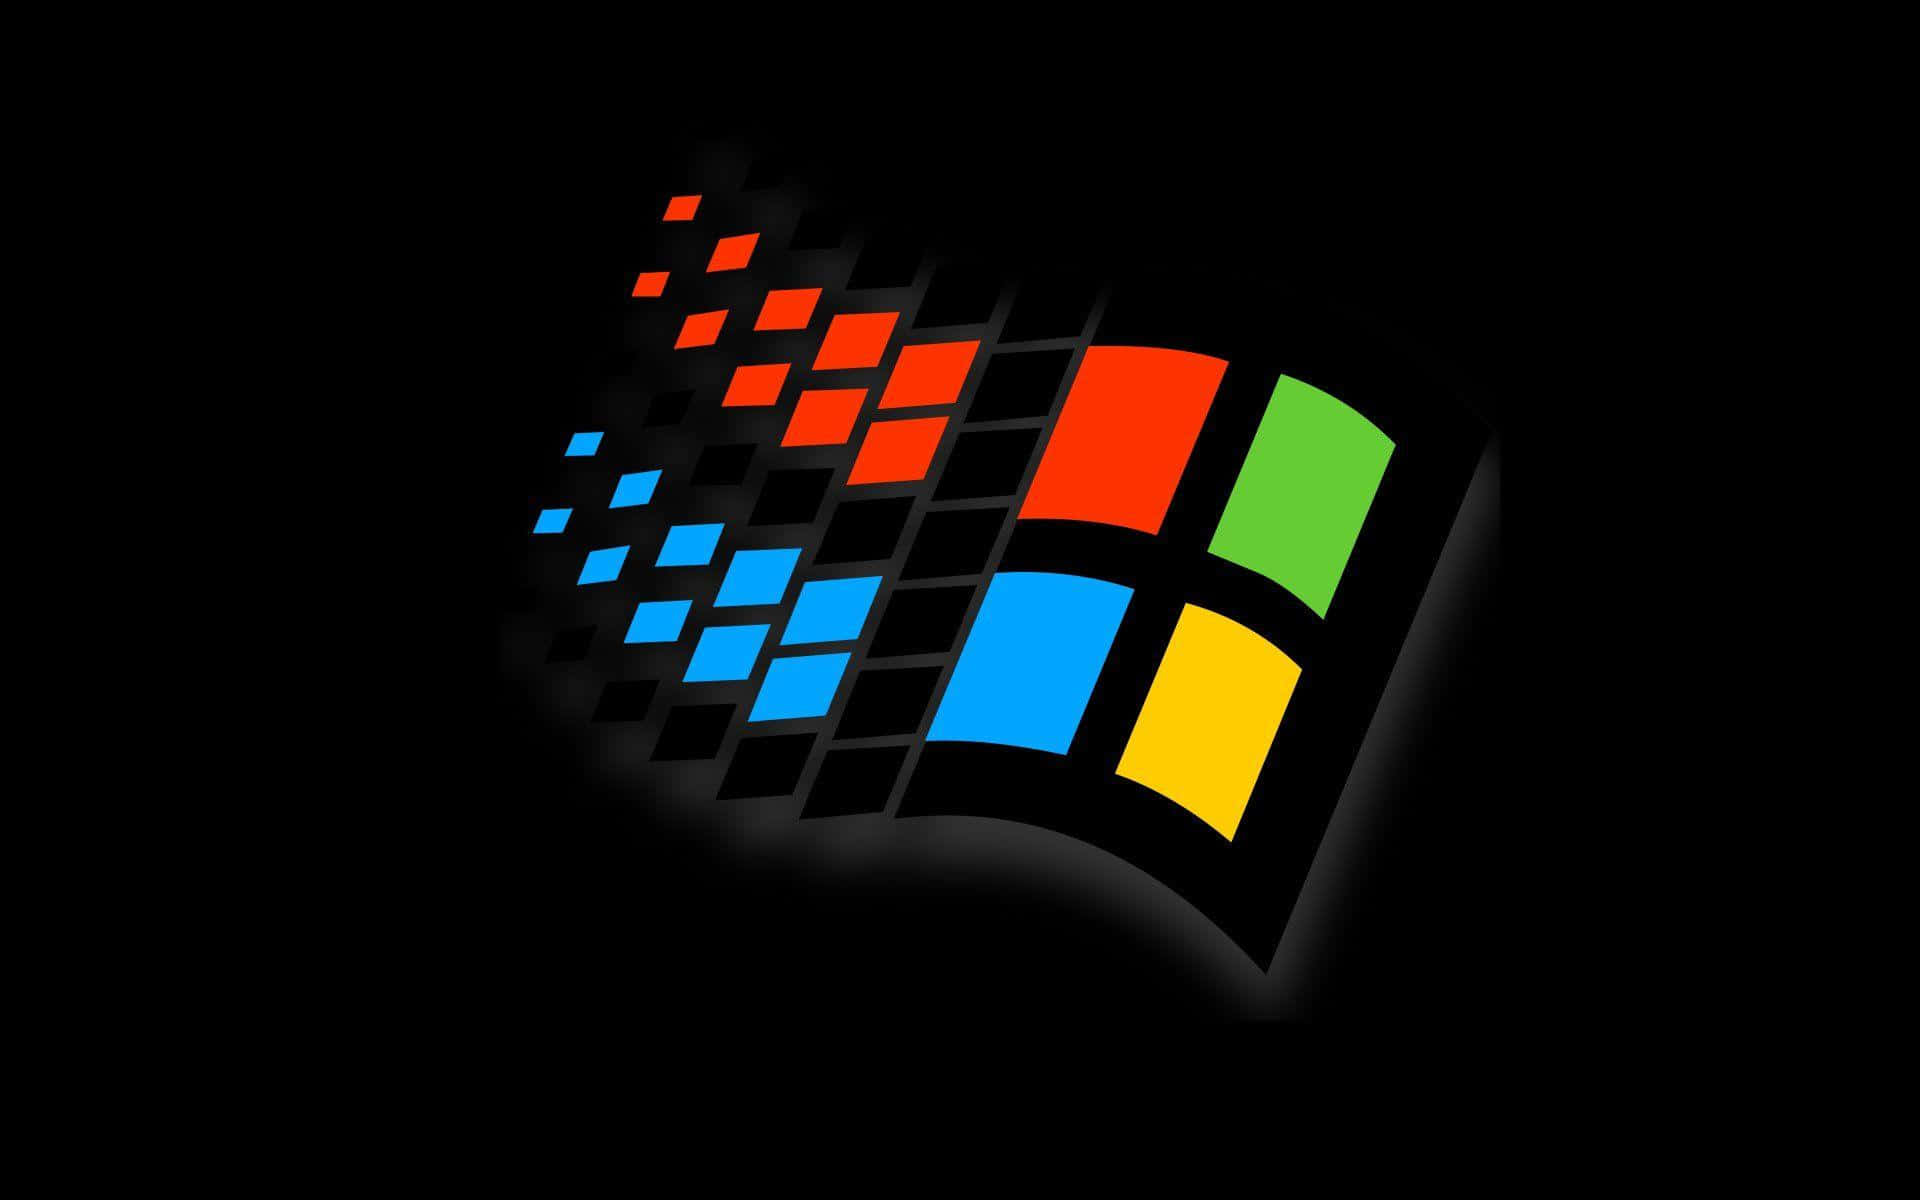 Engrafisk Repræsentation Af Windows 95 Logoet Og Baggrunden